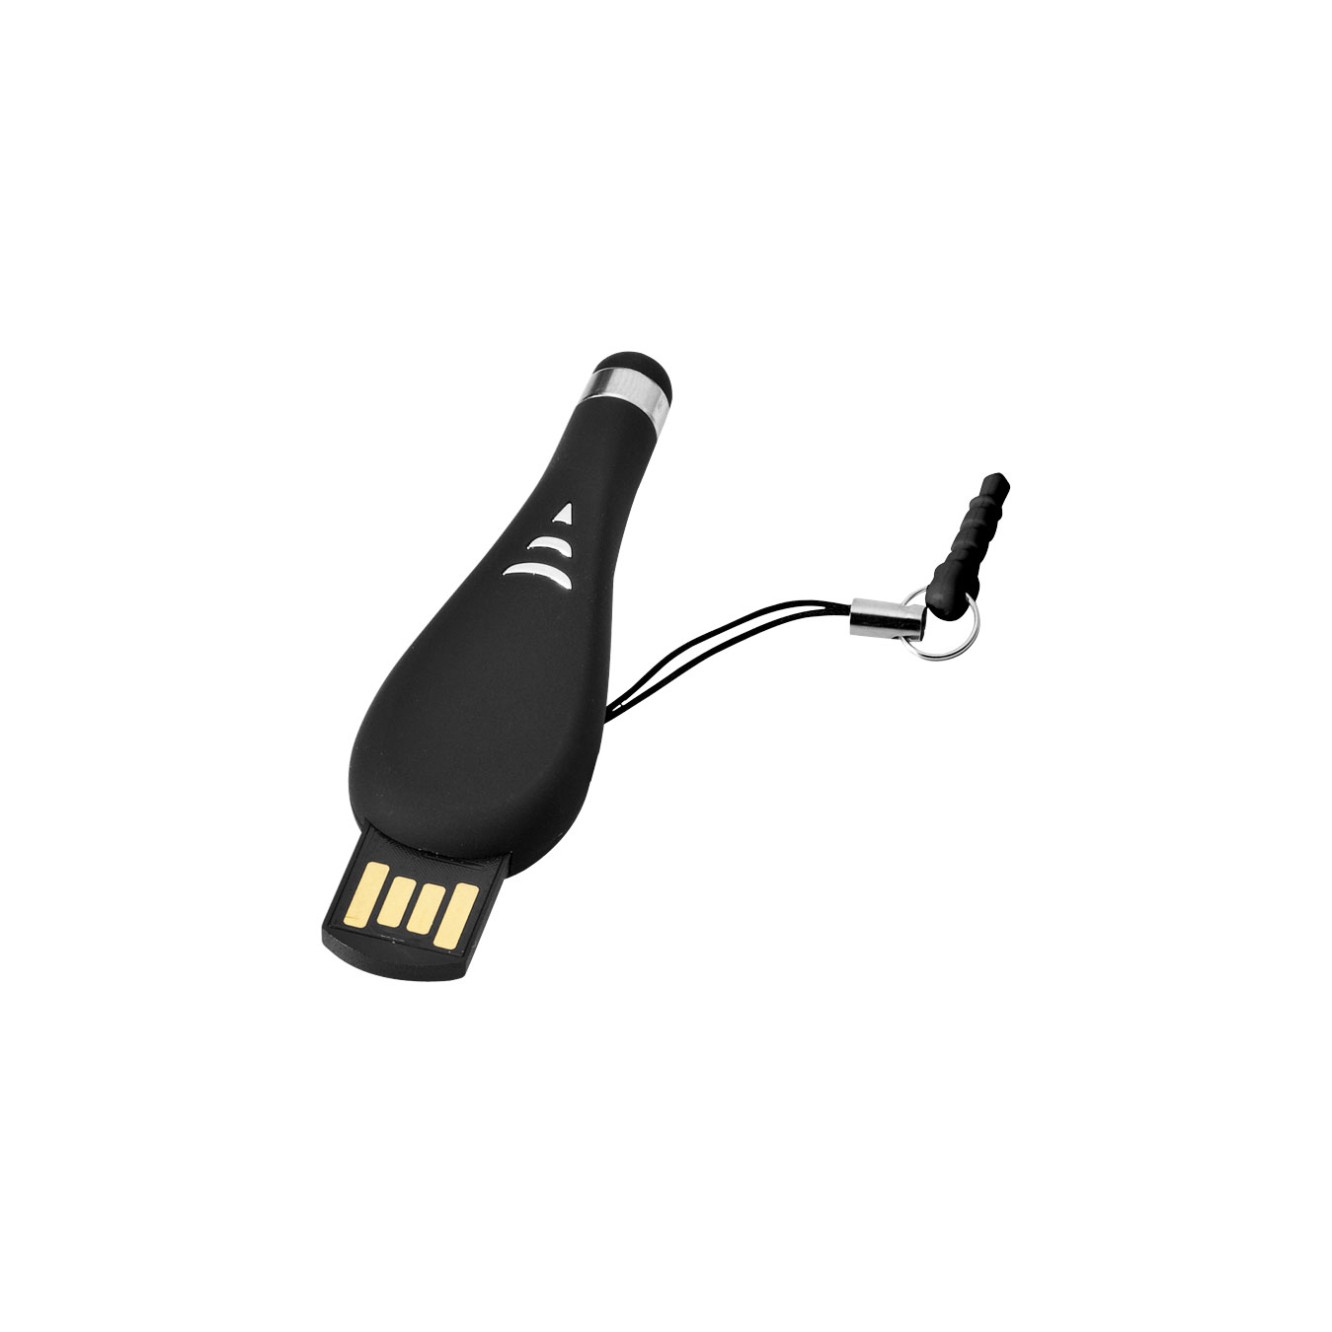 Stylus mini USB stick